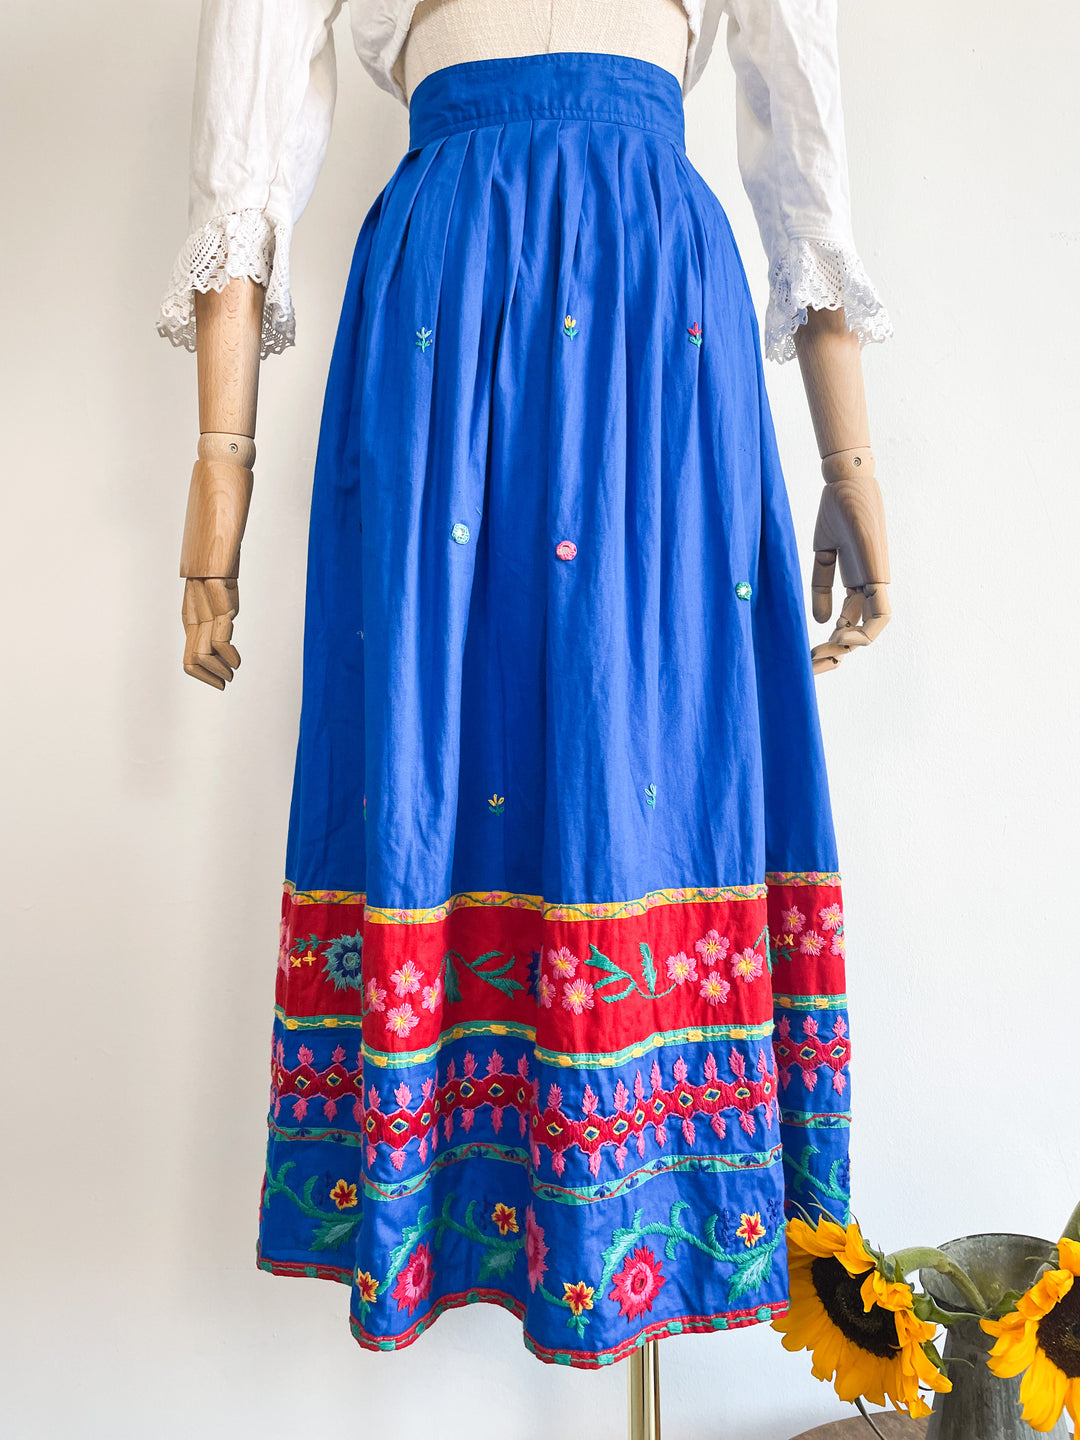 The Mumbai 70s Skirt